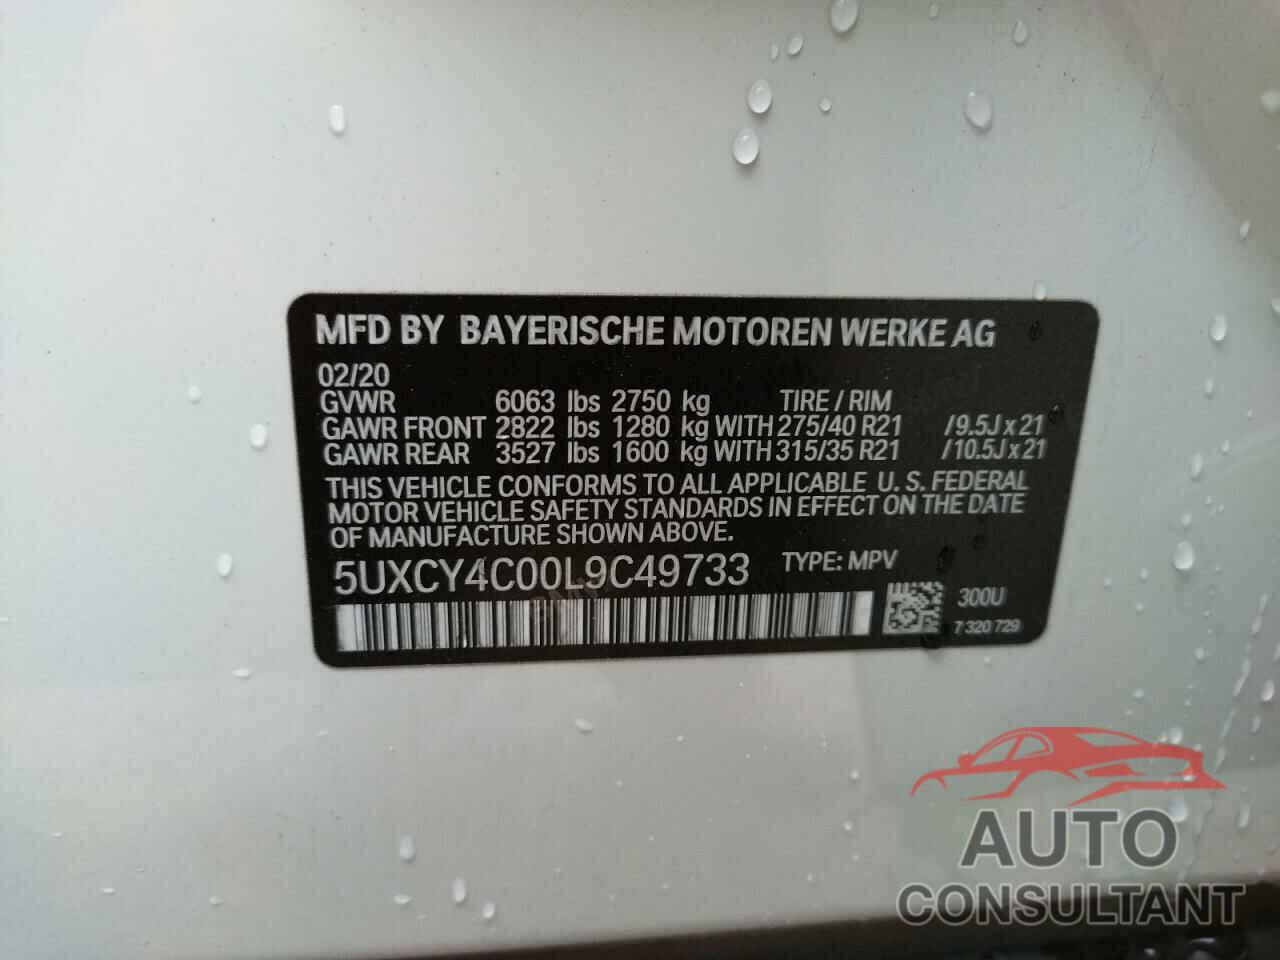 BMW X6 2020 - 5UXCY4C00L9C49733